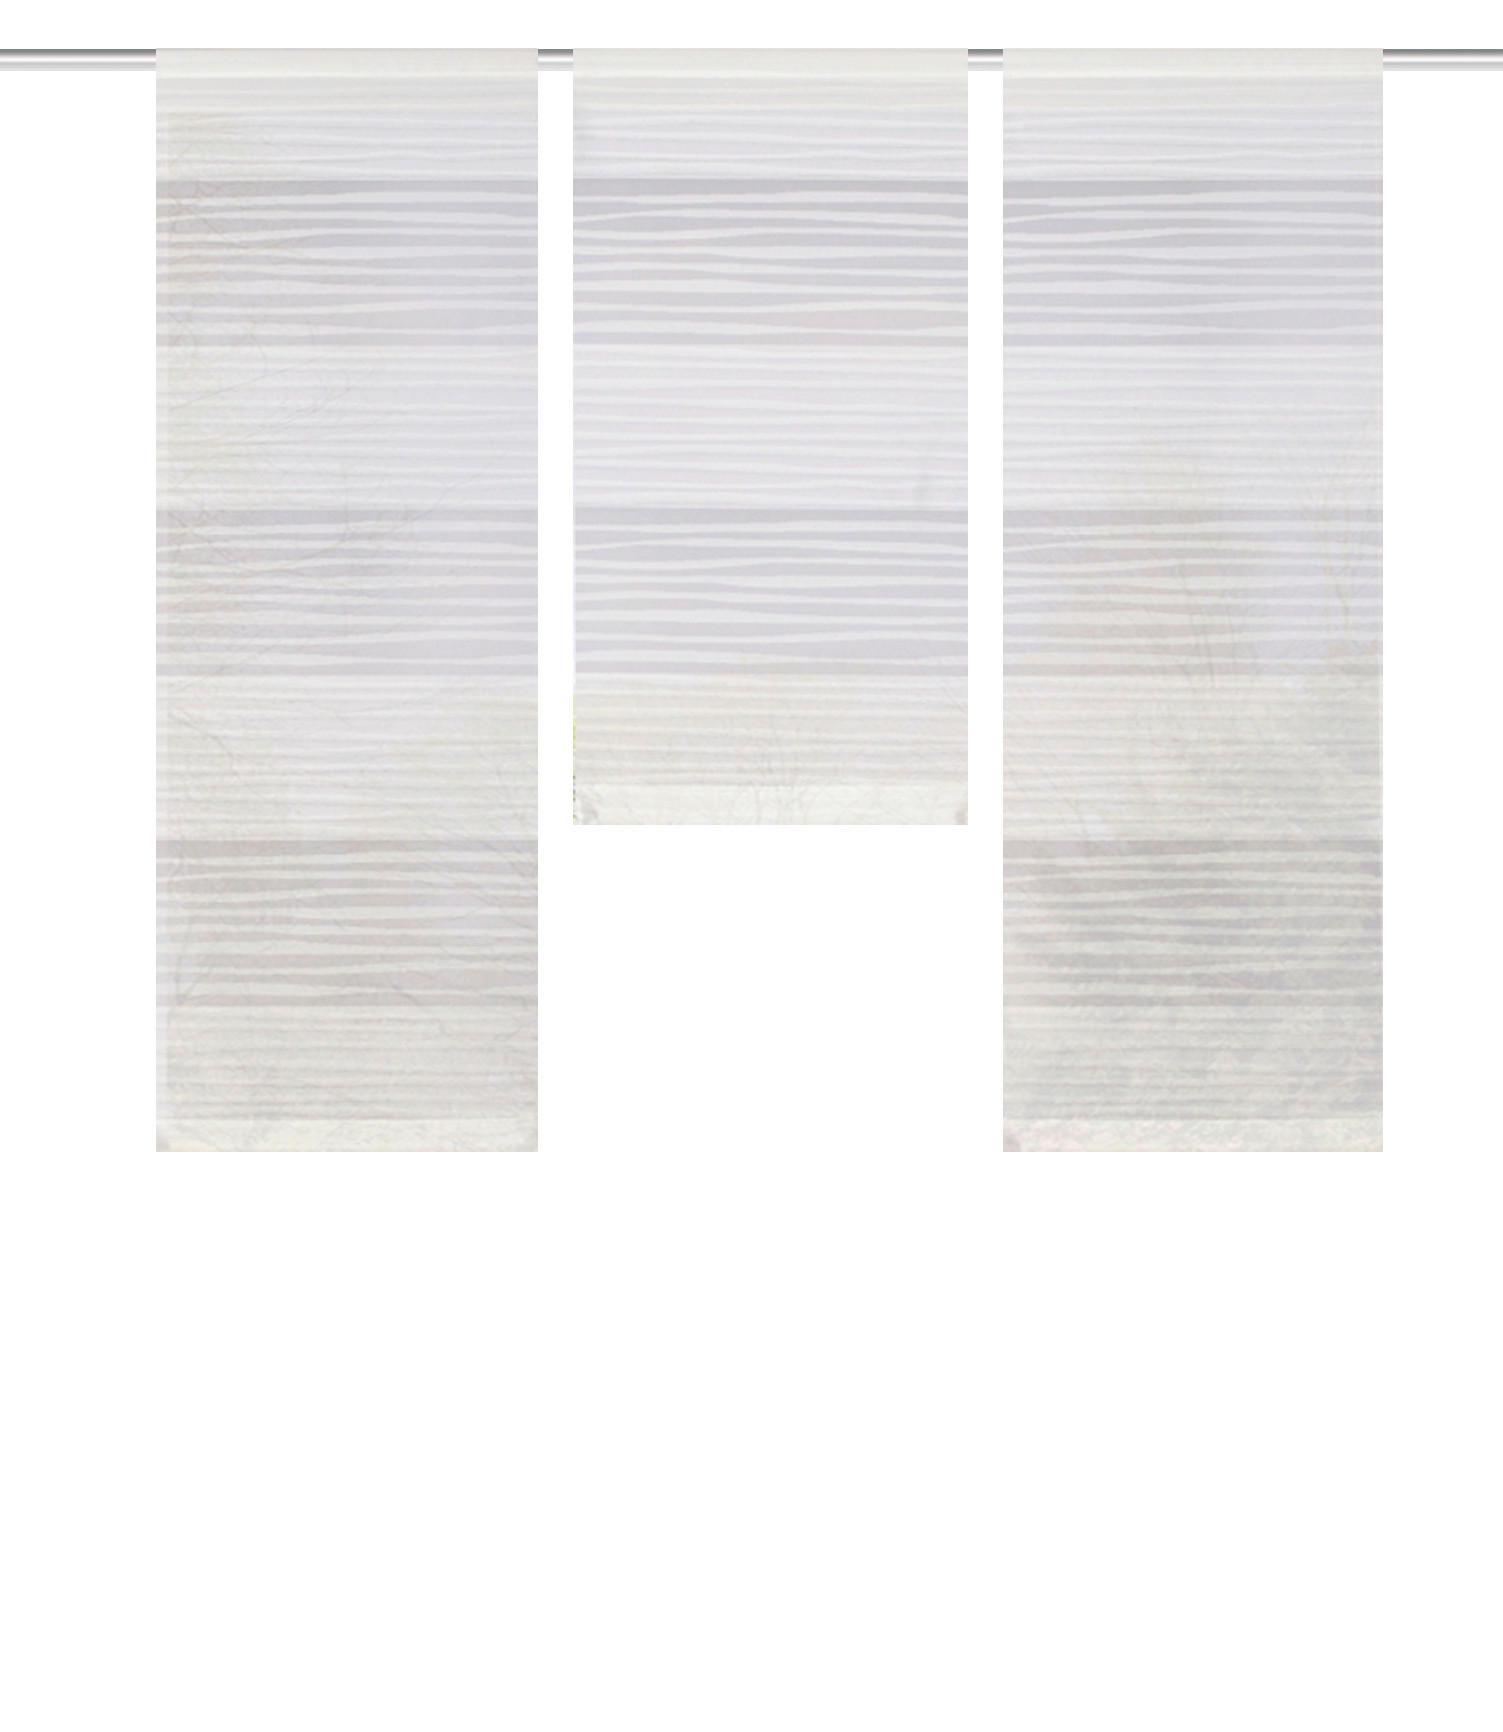 FLÄCHENVORHANG in Weiß blickdicht  - Weiß, KONVENTIONELL, Textil (30/80cm) - Schmidt W. Gmbh